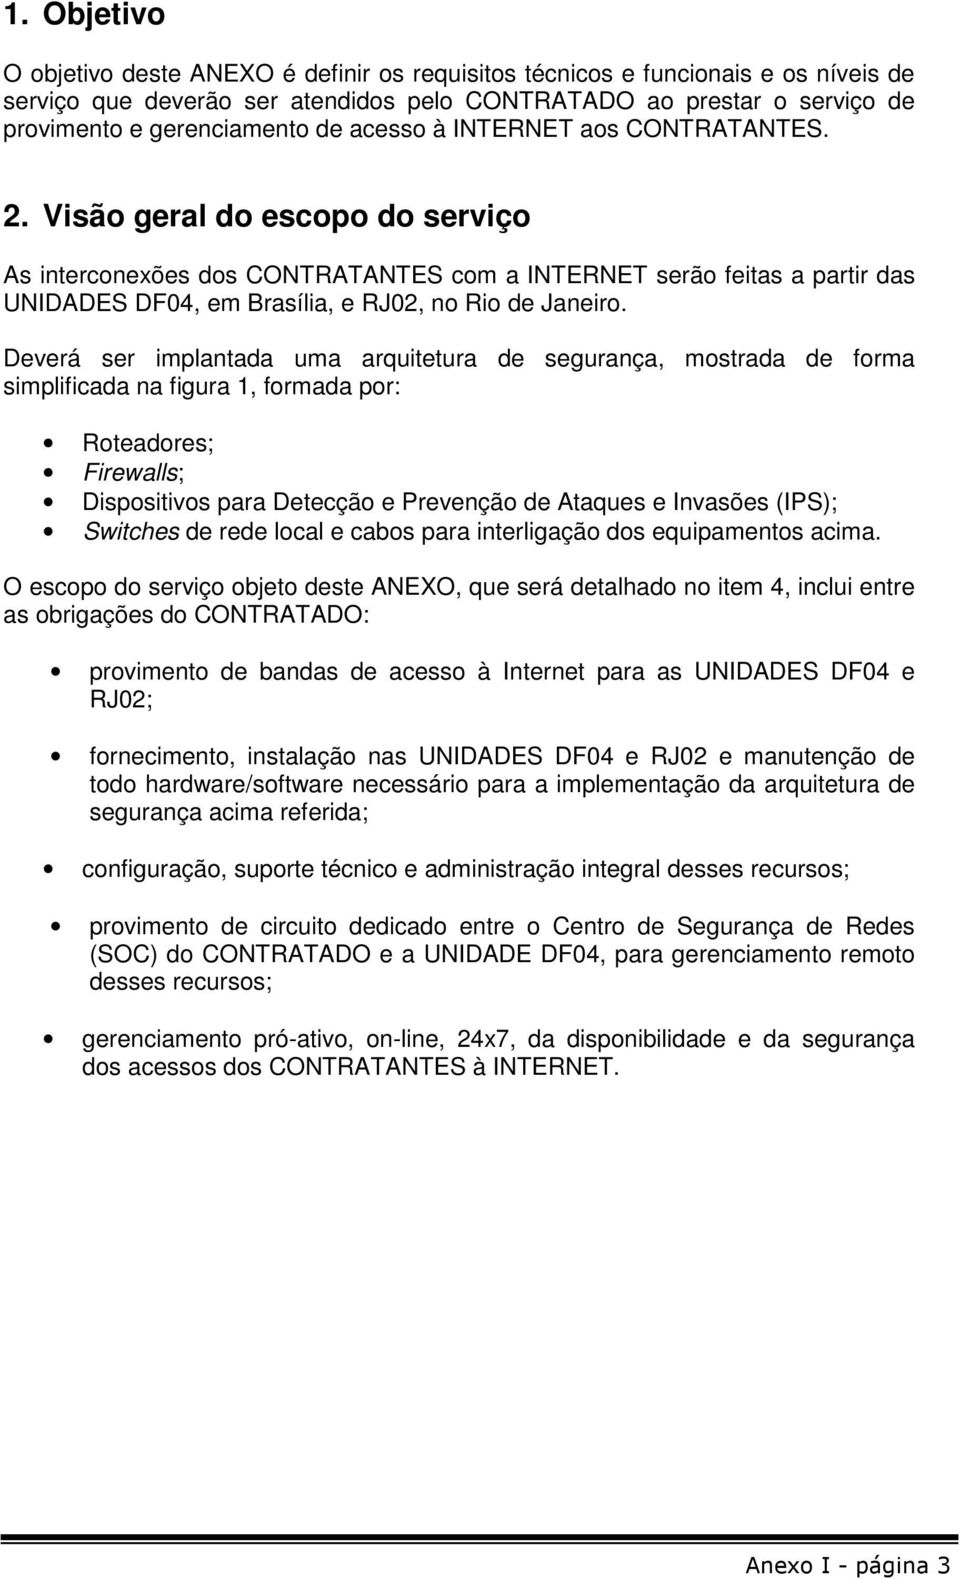 Visão geral do escopo do serviço As interconexões dos CONTRATANTES com a INTERNET serão feitas a partir das UNIDADES DF04, em Brasília, e RJ02, no Rio de Janeiro.